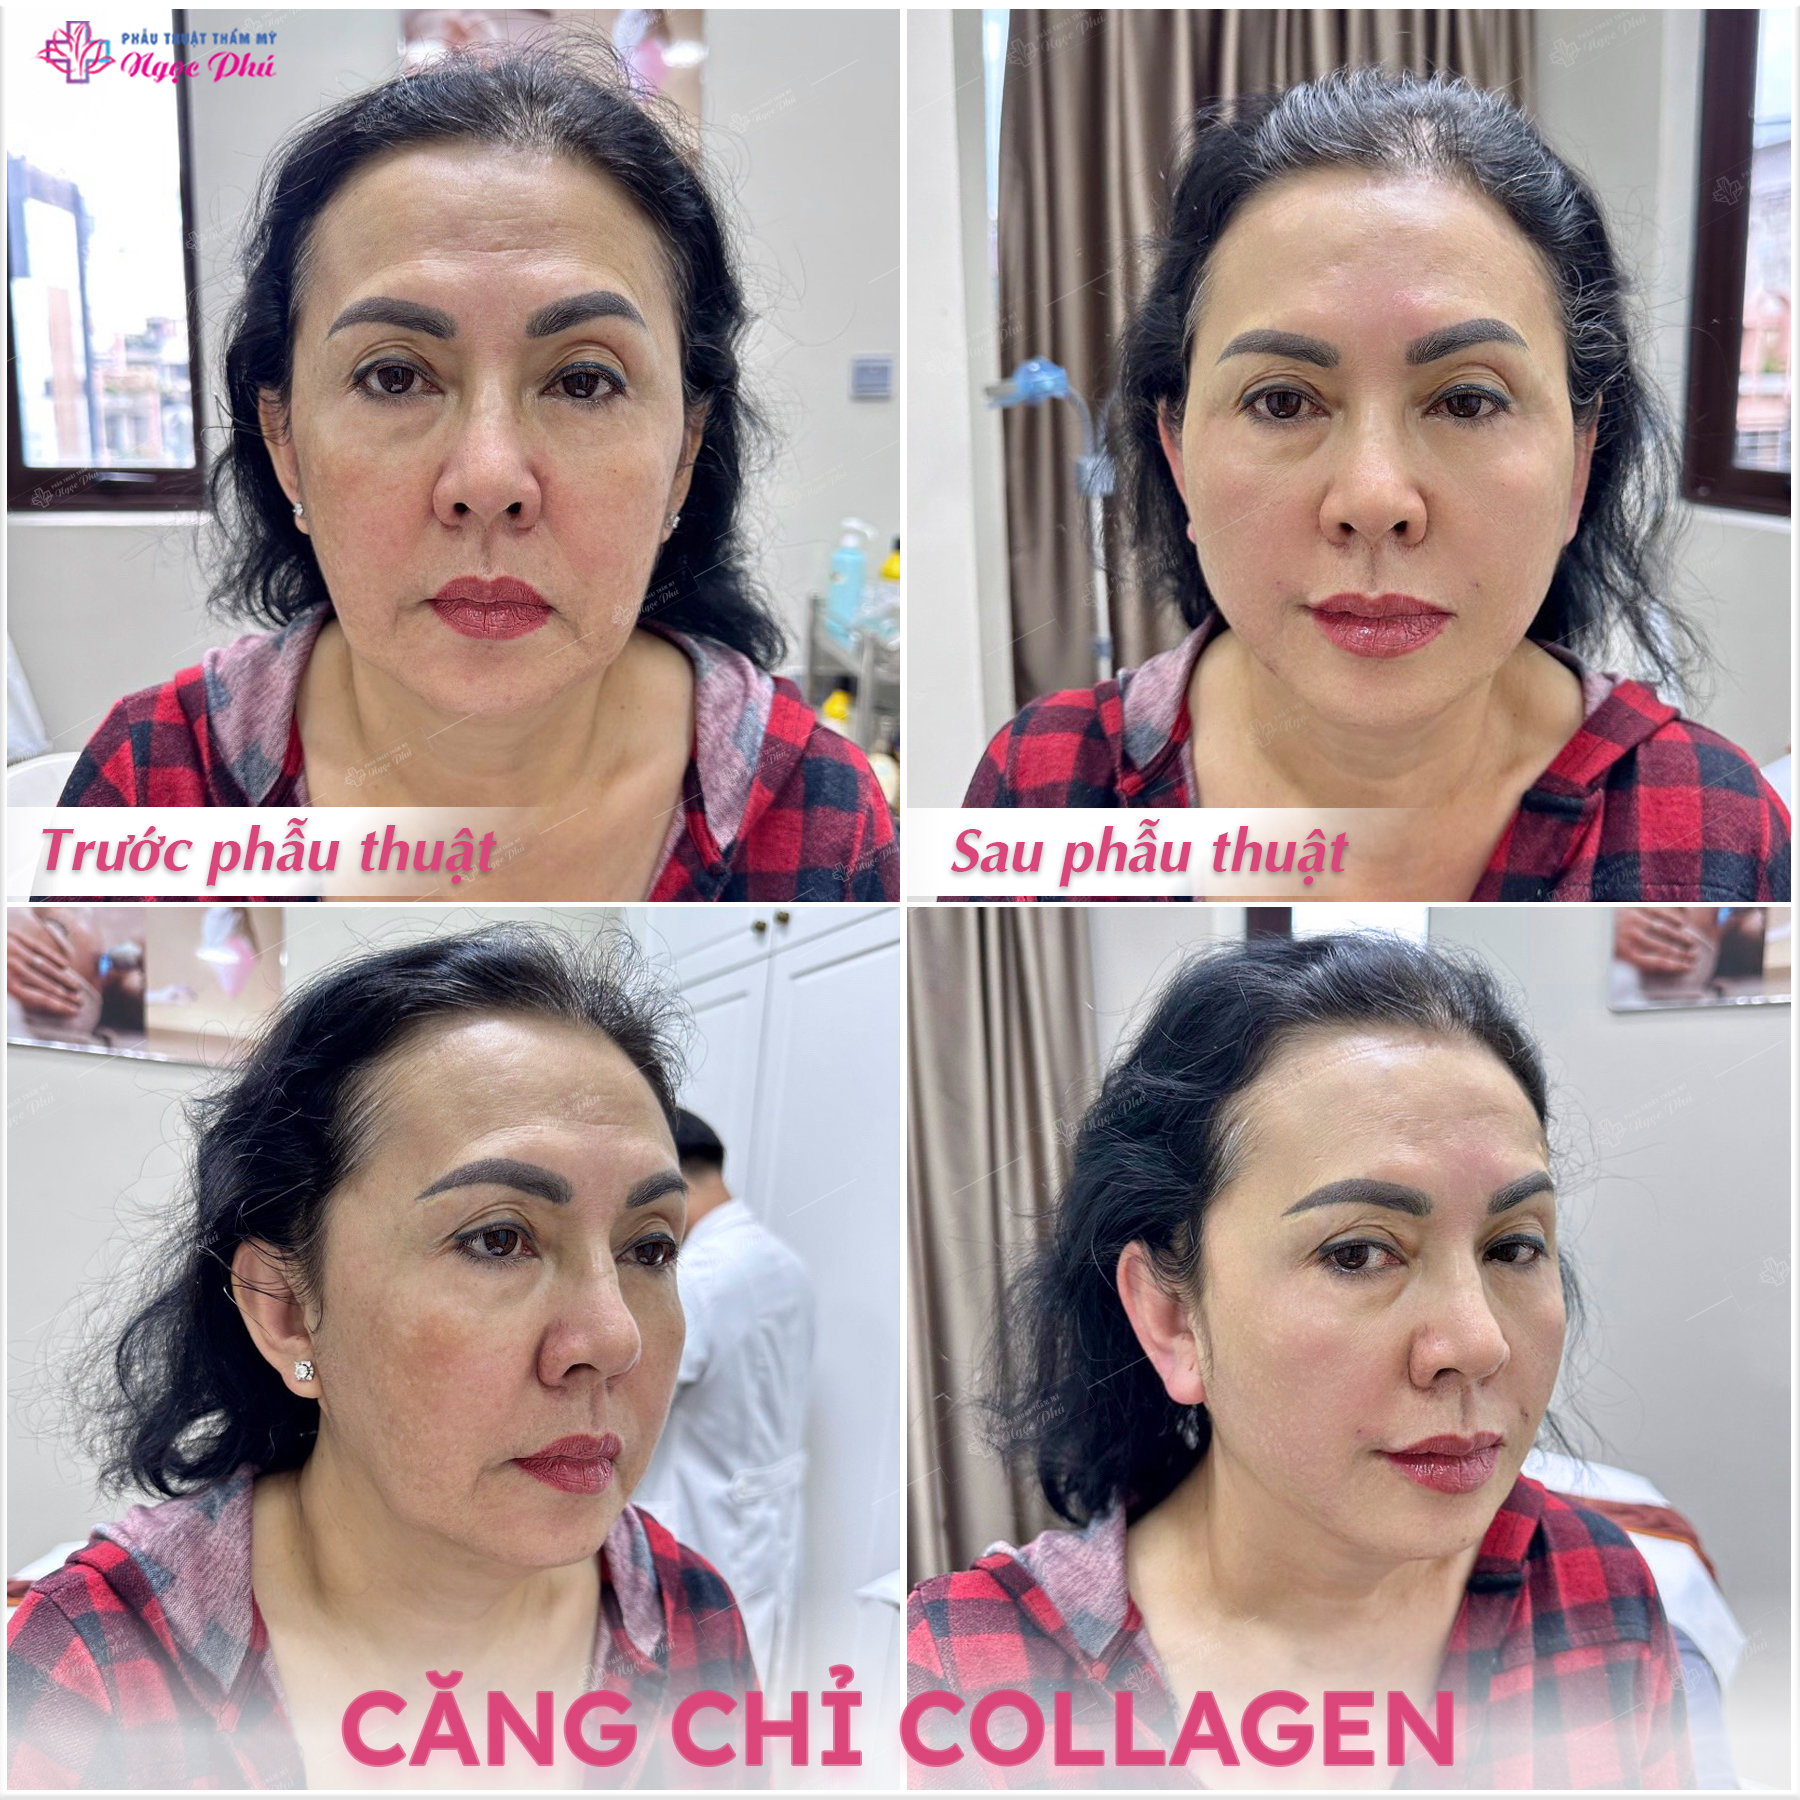 Để lựa chọn được liệu trình căng chỉ collagen phù hợp cho mẹ, bạn nên tham khảo ý kiến của bác sĩ chuyên khoa.